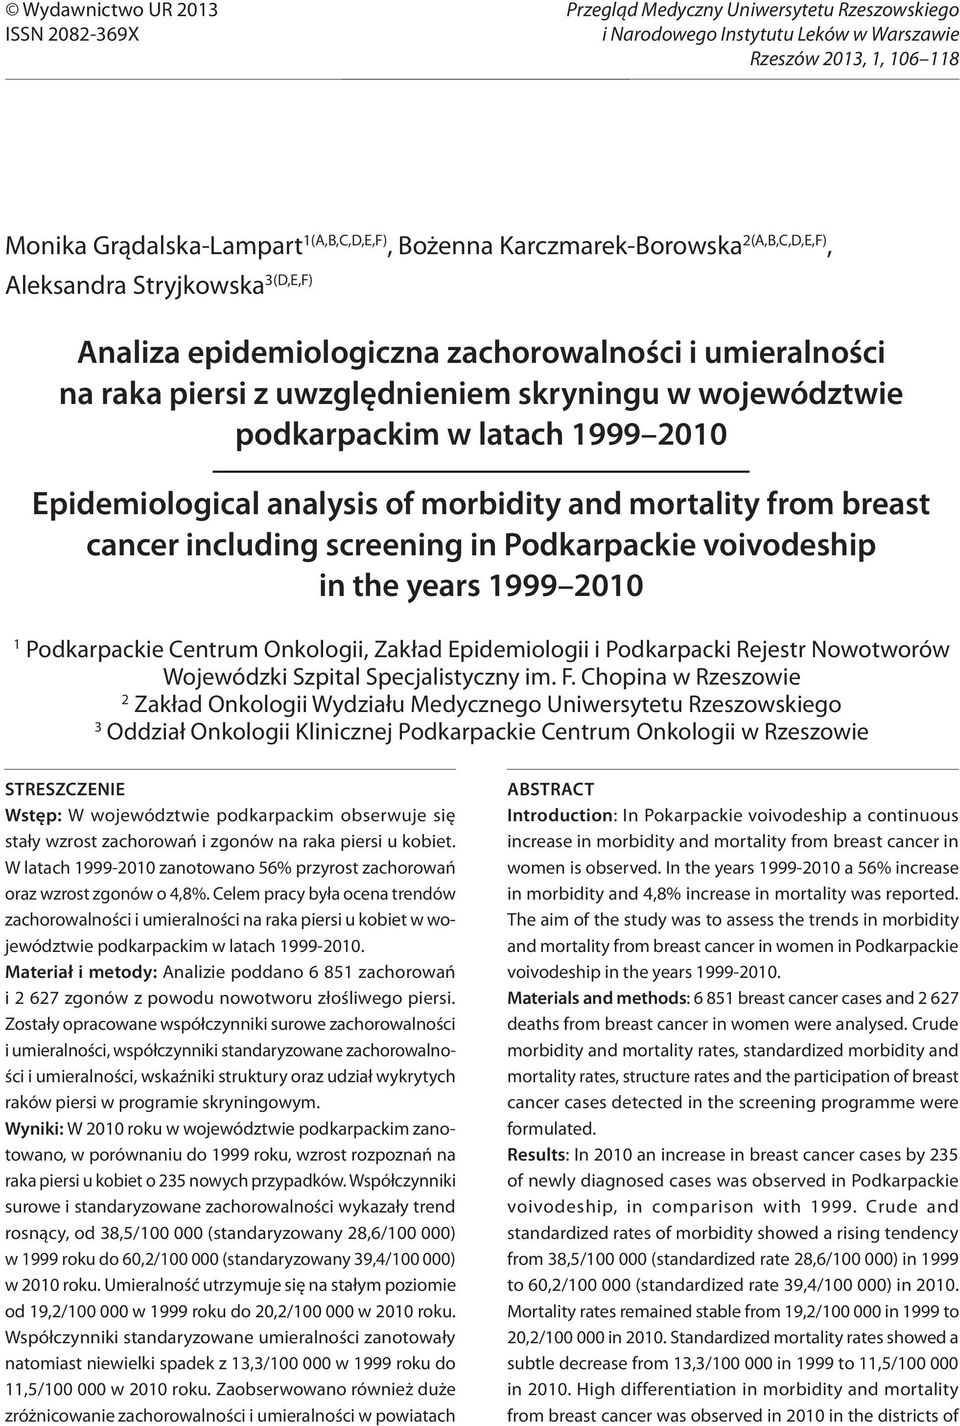 1(A,B,C,D,E,F), Bożenna Karczmarek-Borowska 2(A,B,C,D,E,F), Aleksandra Stryjkowska 3(D,E,F) Analiza epidemiologiczna zachorowalności i umieralności na raka piersi z uwzględnieniem skryningu w